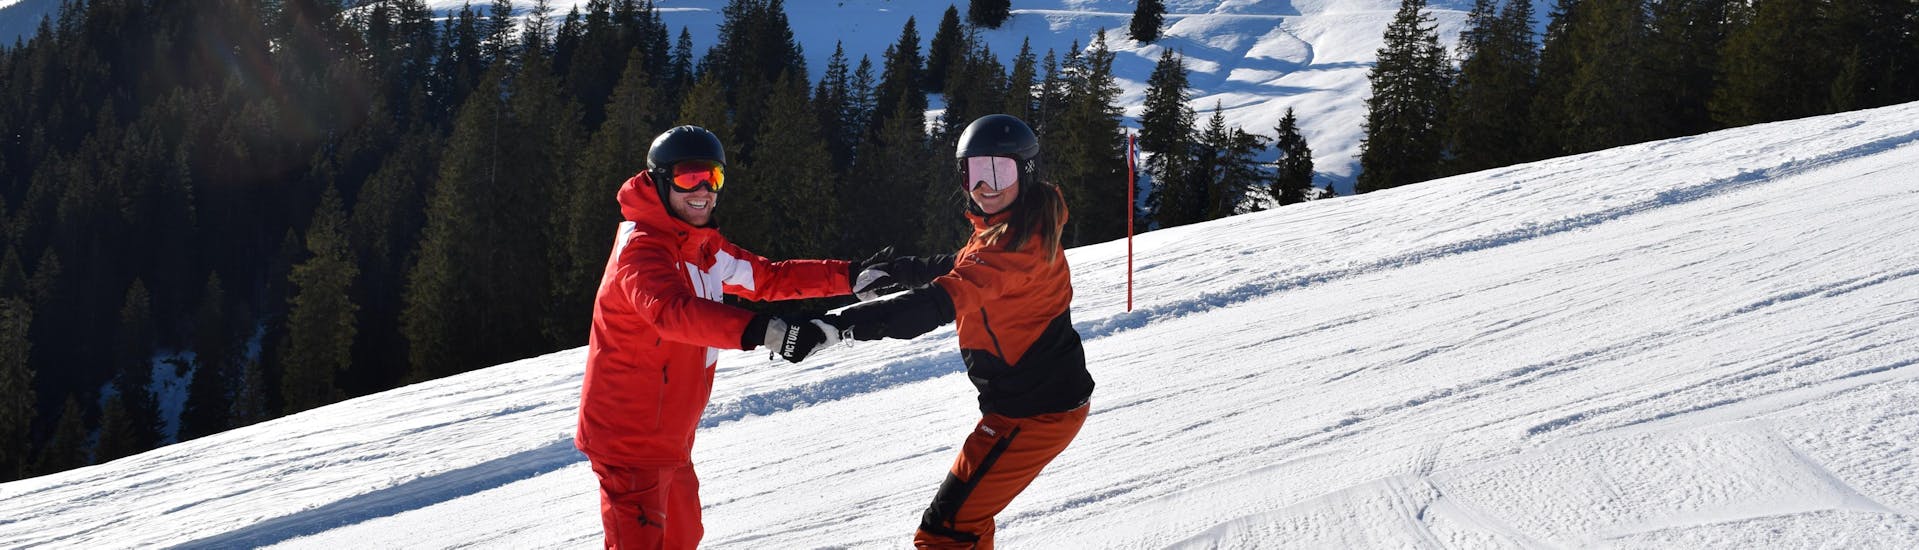 Cours particulier de snowboard dès 5 ans pour Tous niveaux avec Ski School Snowsports Westendorf.